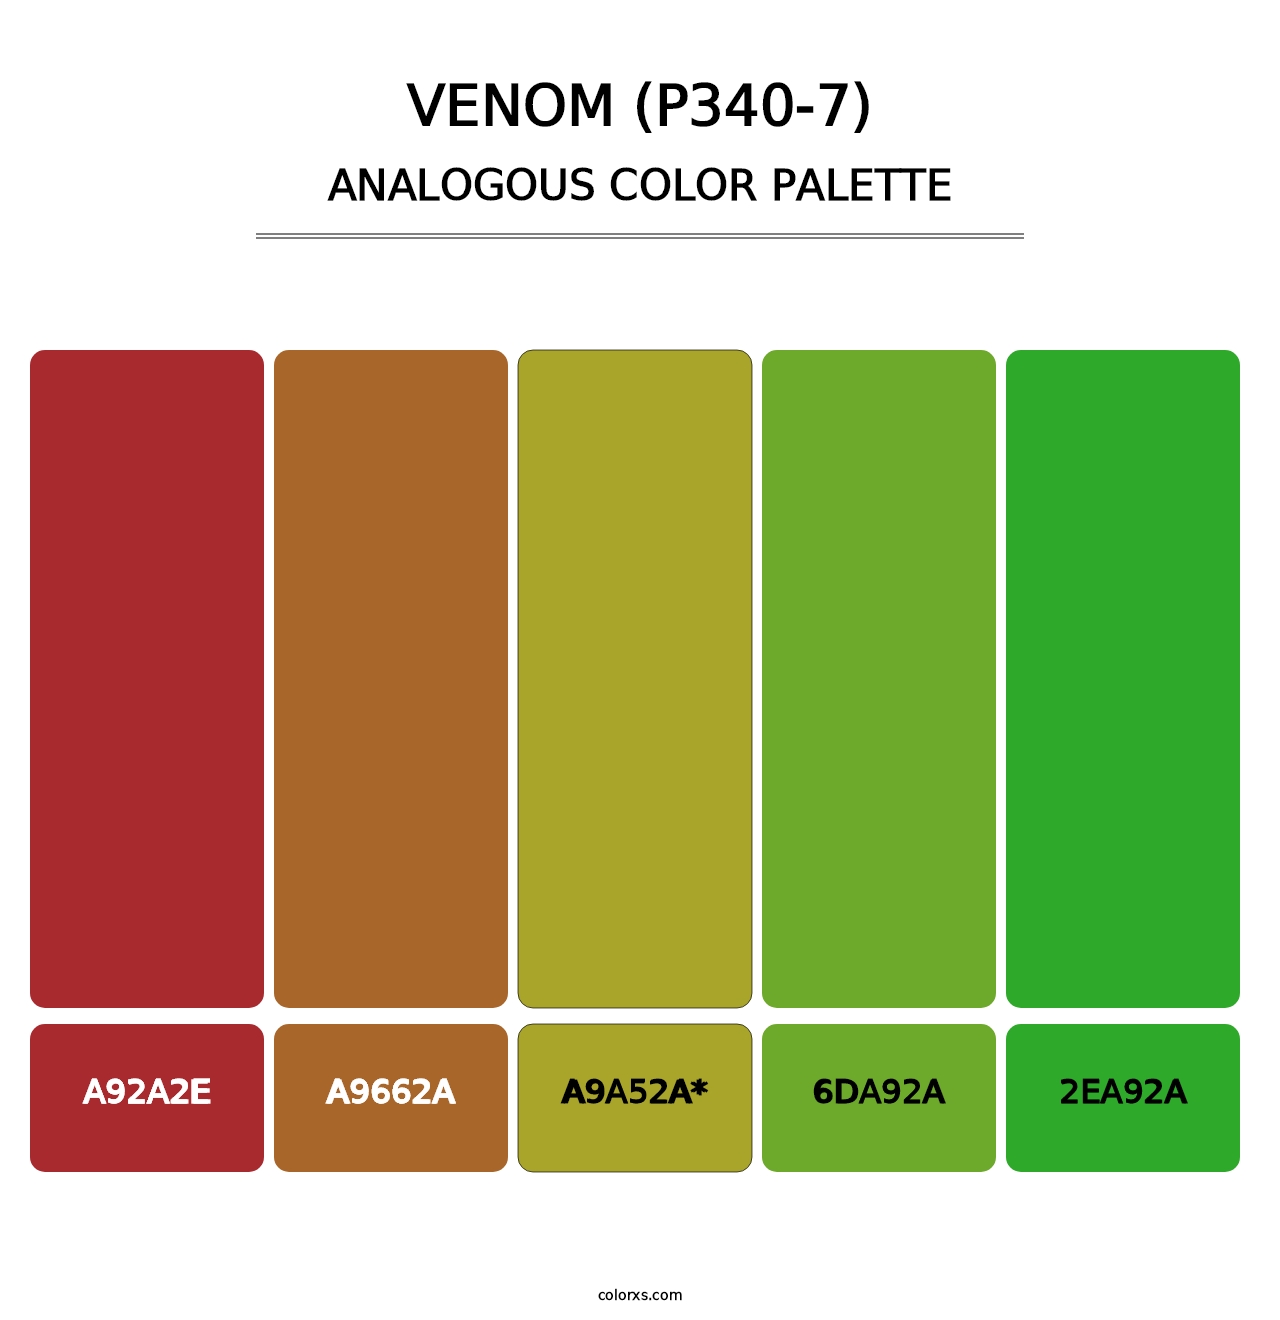 Venom (P340-7) - Analogous Color Palette